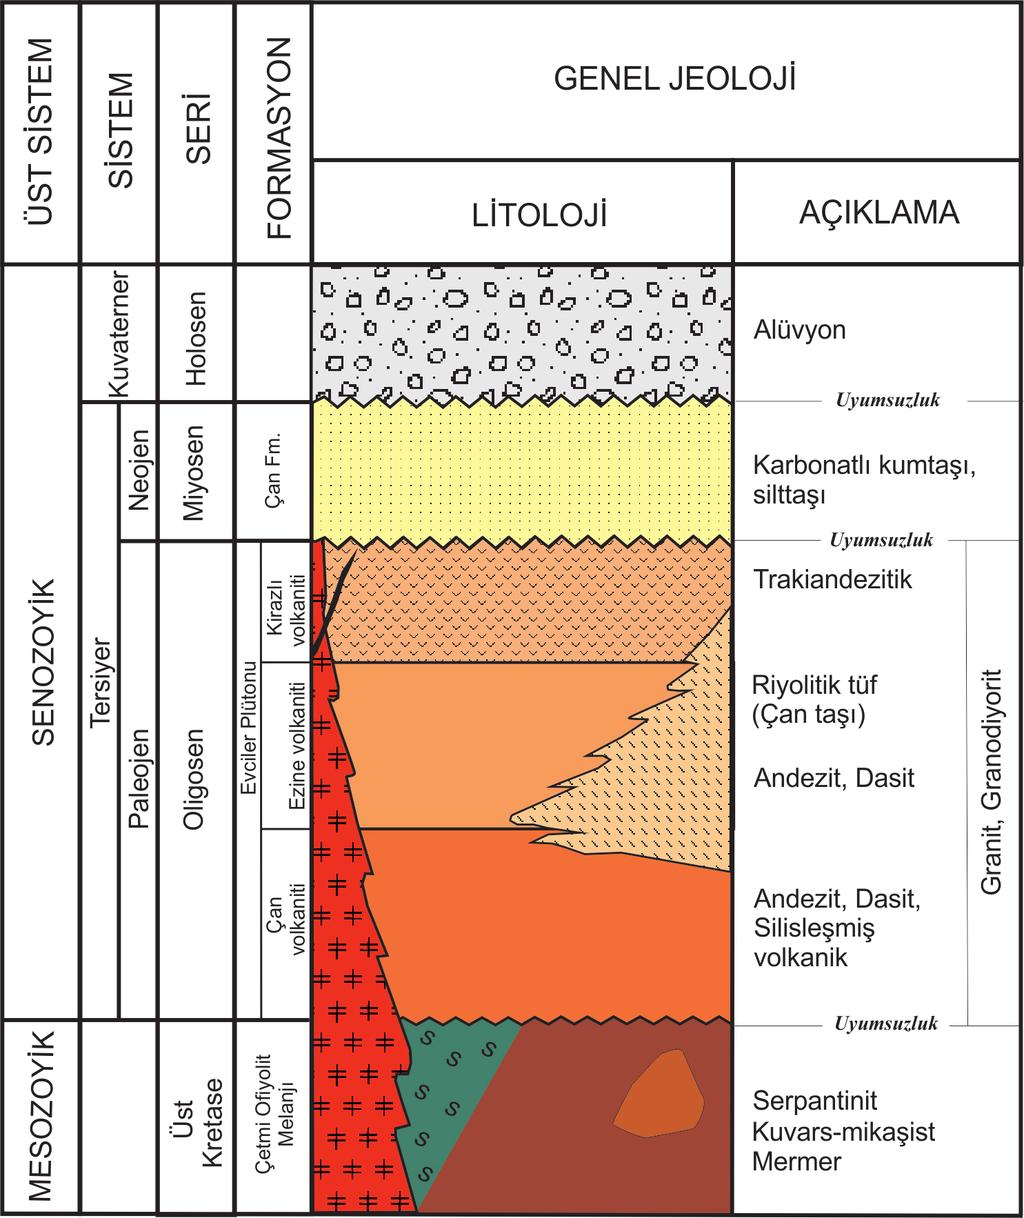 Oya ERENOĞLU Bölgede Oligosen dönemine ait yaygın gözlenen volkanik topluluk litolojik farklılıklarından ve stratigrafik konumlarından dolayı Çan volkaniti, Ezine volkaniti ve Kirazlı volkaniti olmak